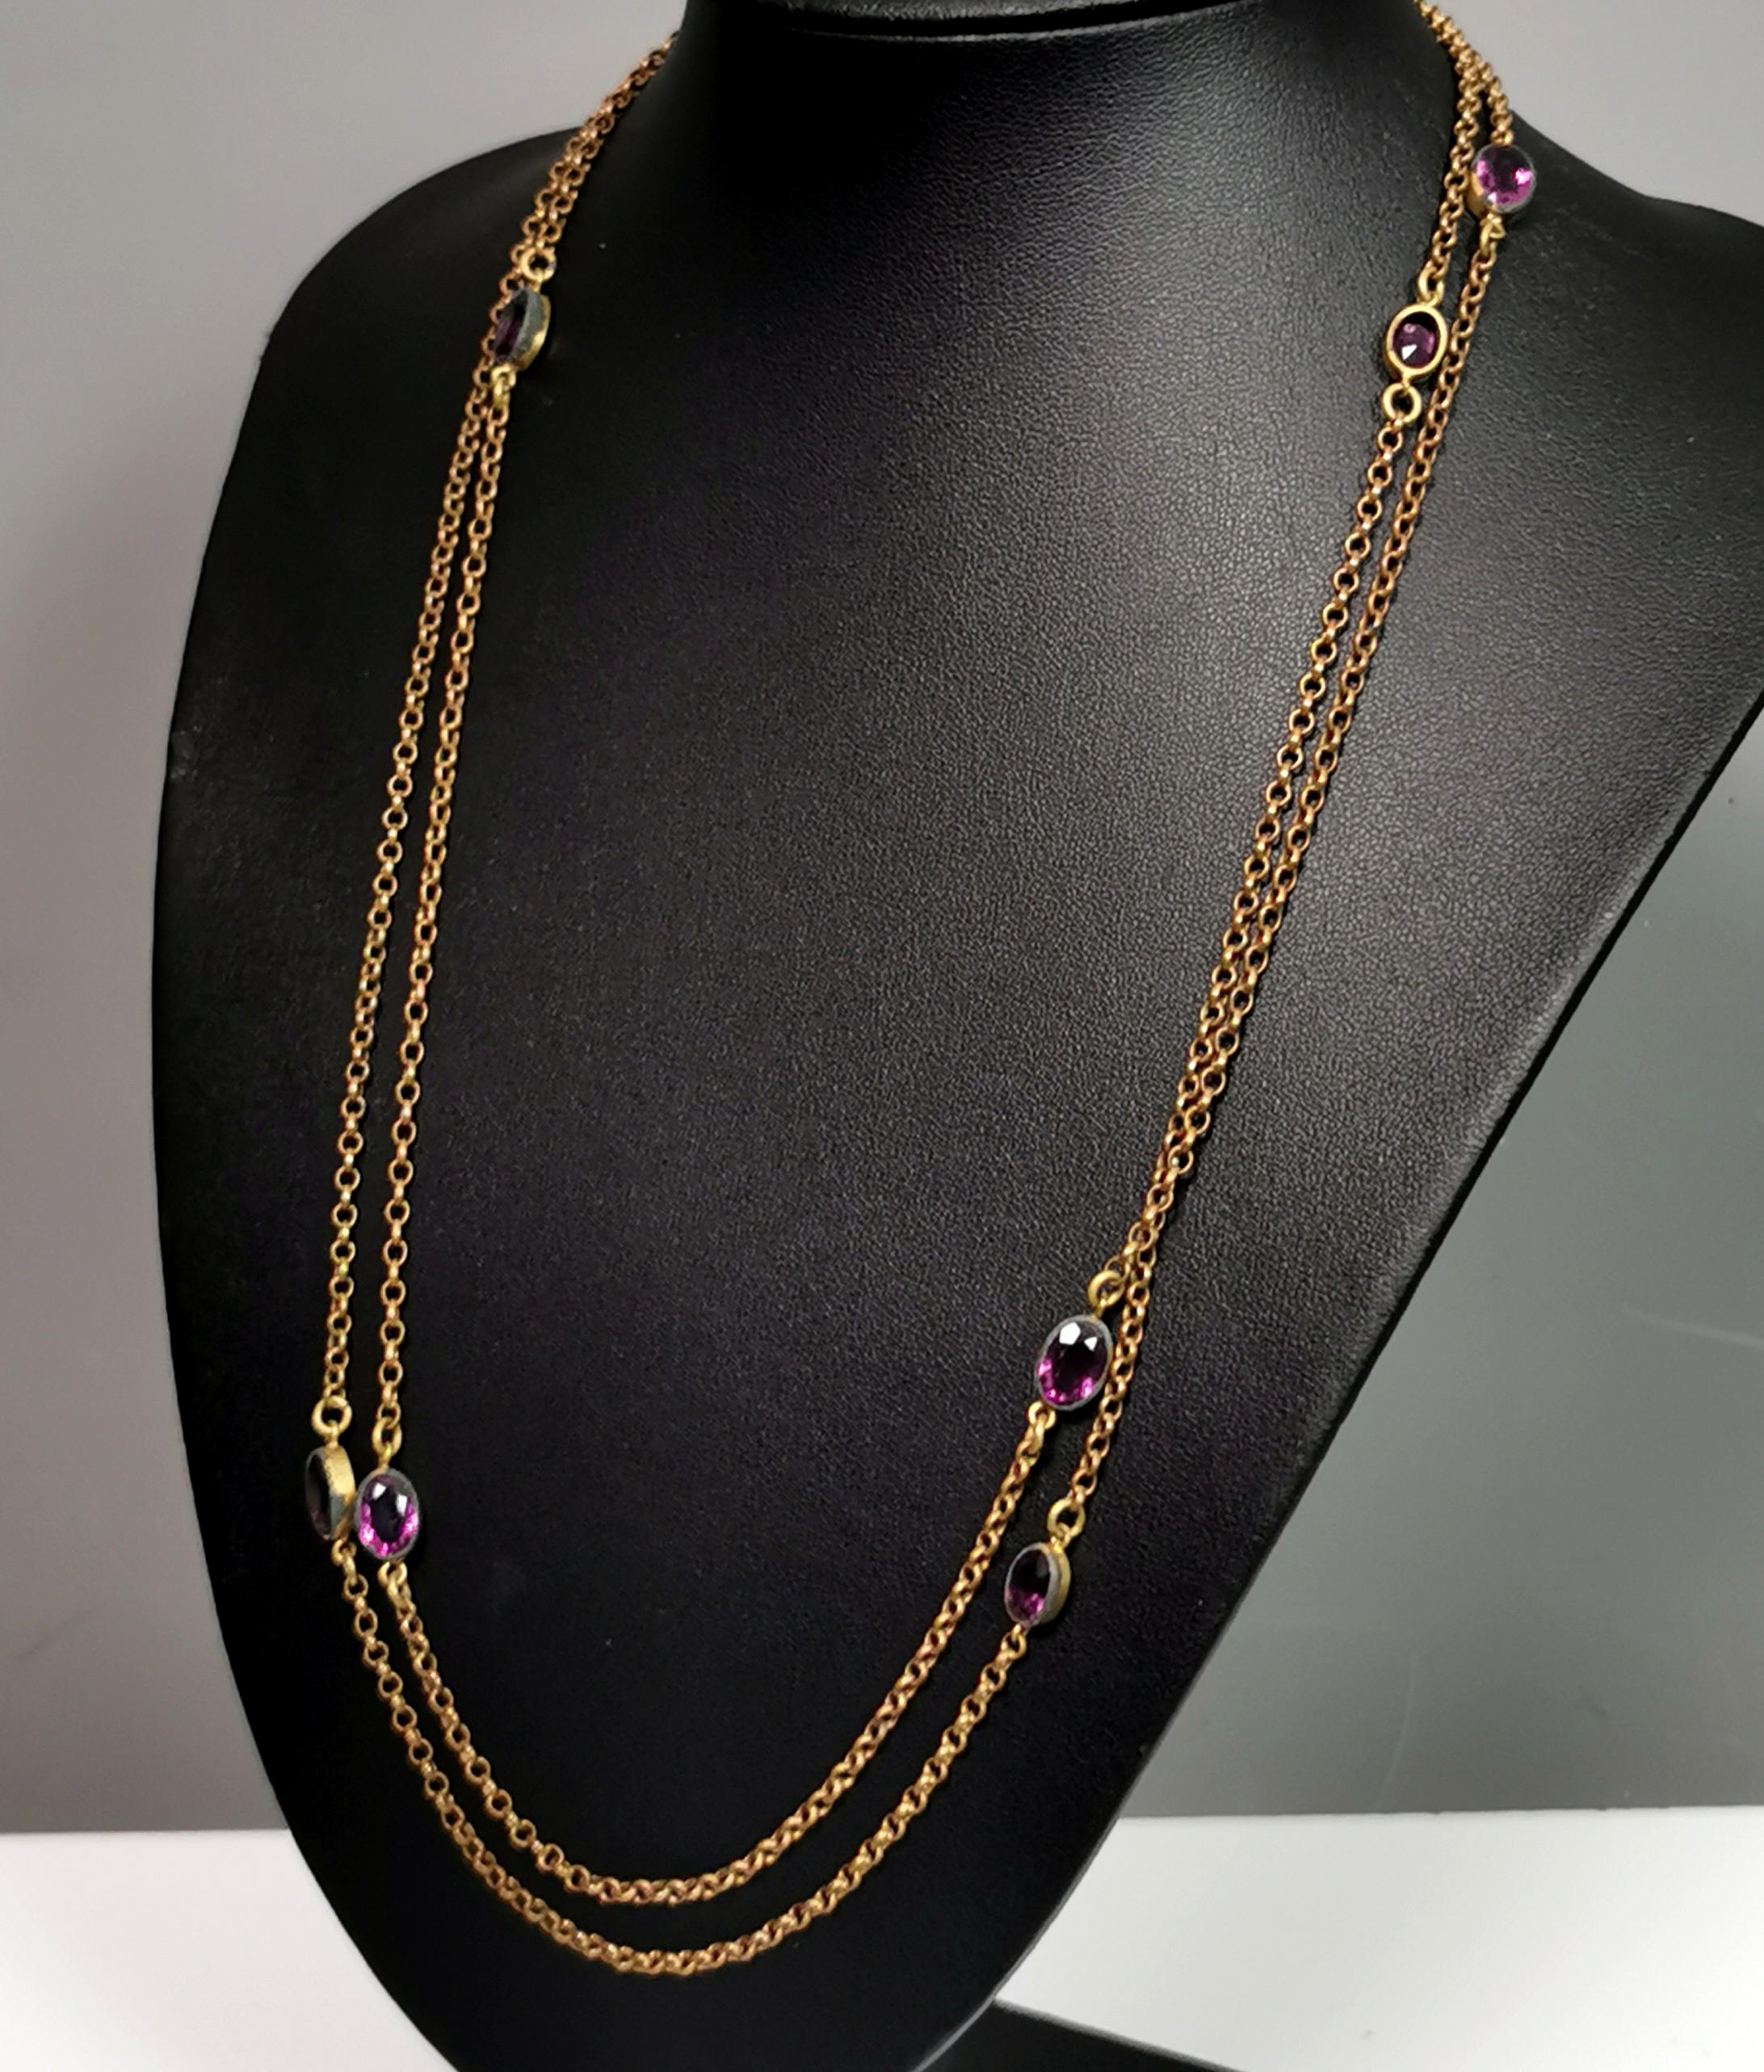 Antique Edwardian purple paste sautoir necklace, gold plated long chain  For Sale 4